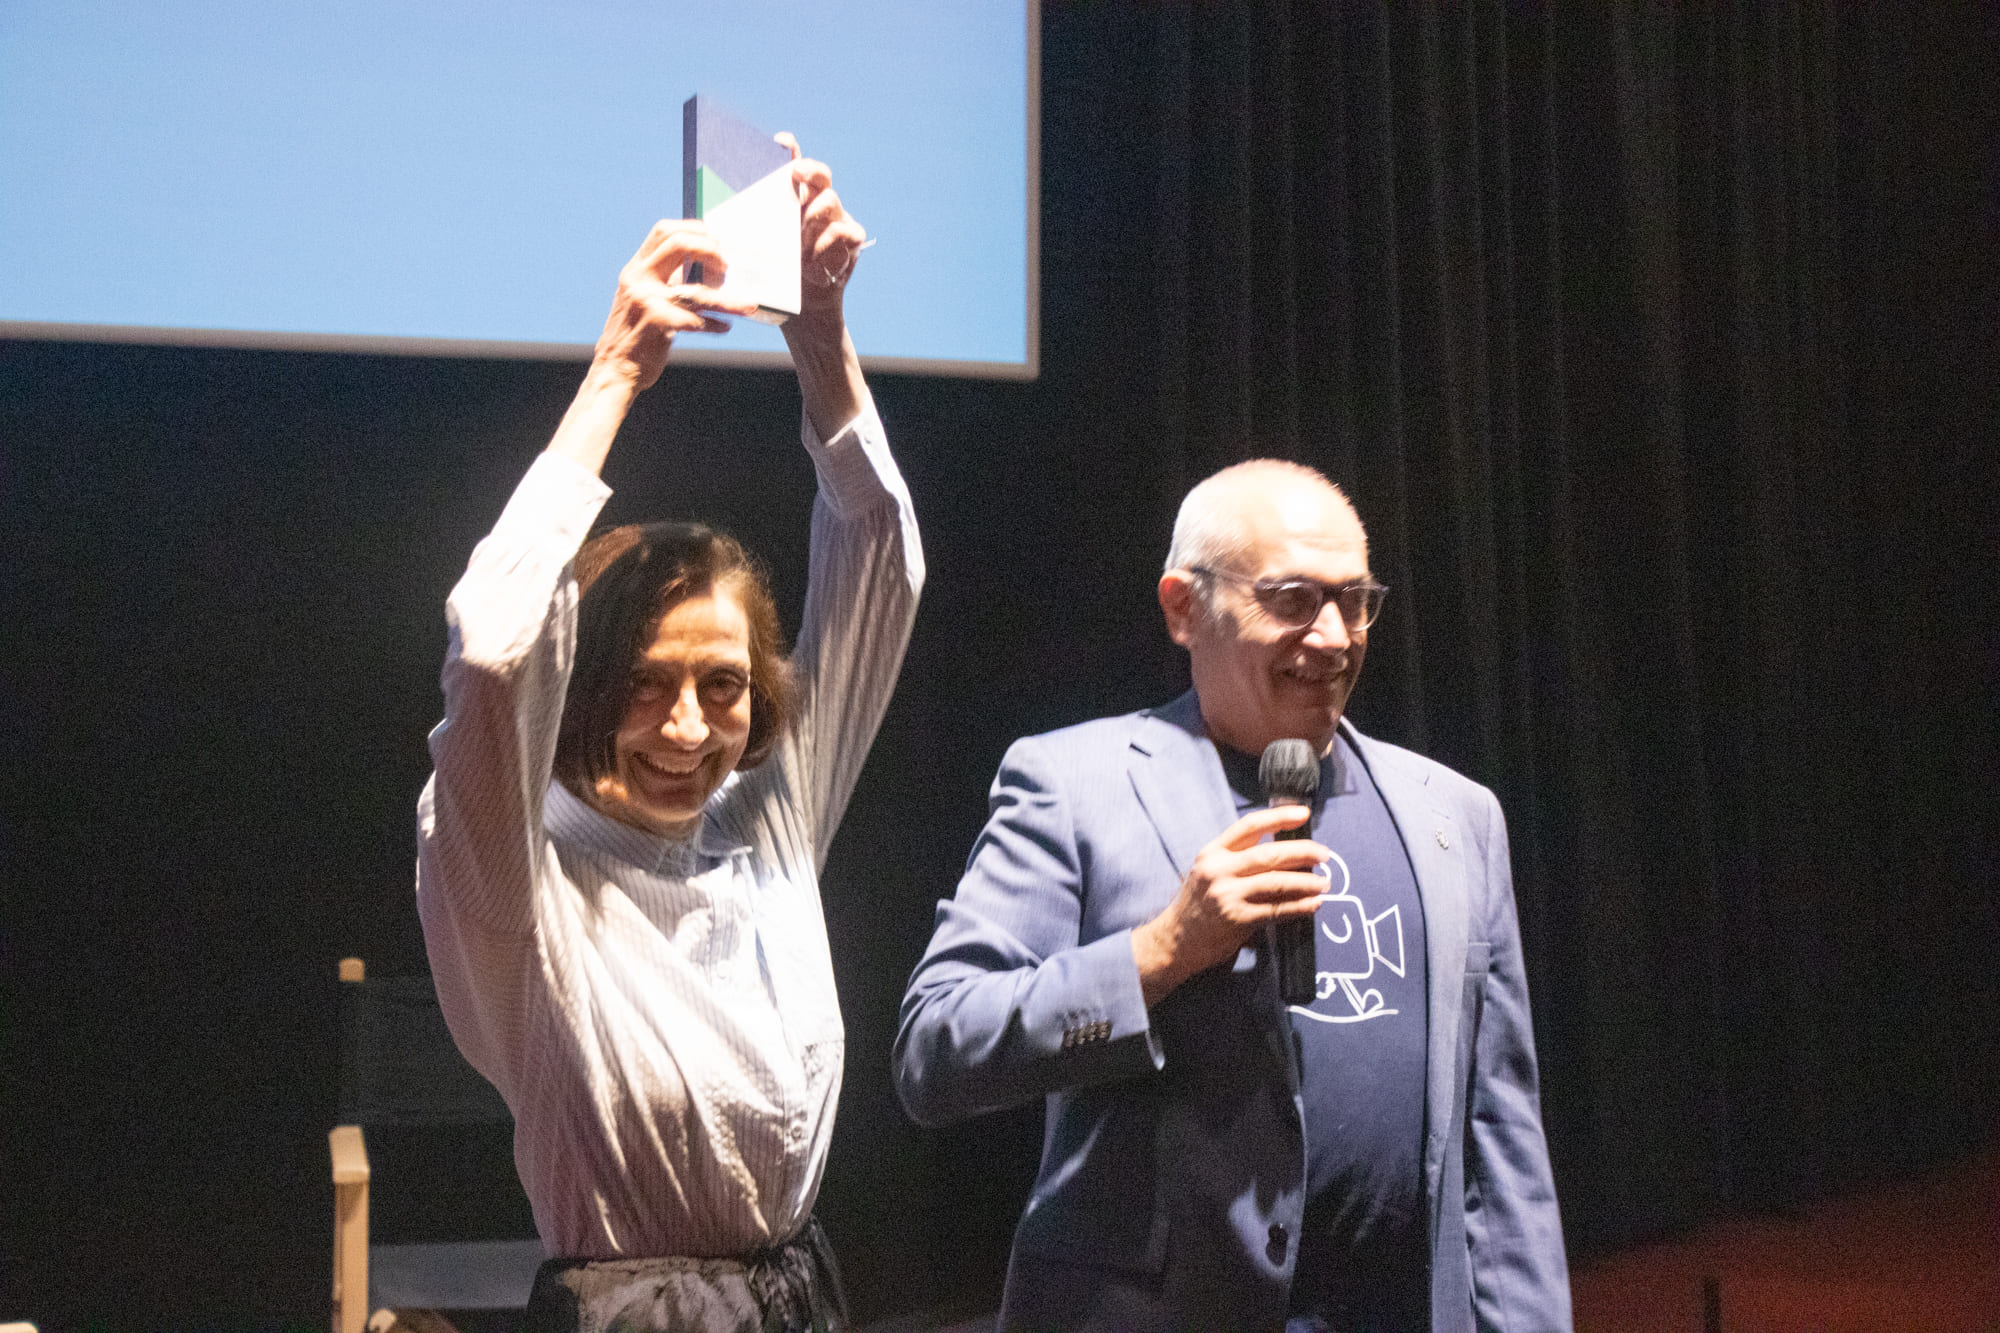 Comença el Transhumant Festival 2023, Carme Elias rep emocionada el Premi a la Trajectòria Audiovisual a la Filmoteca de Catalunya